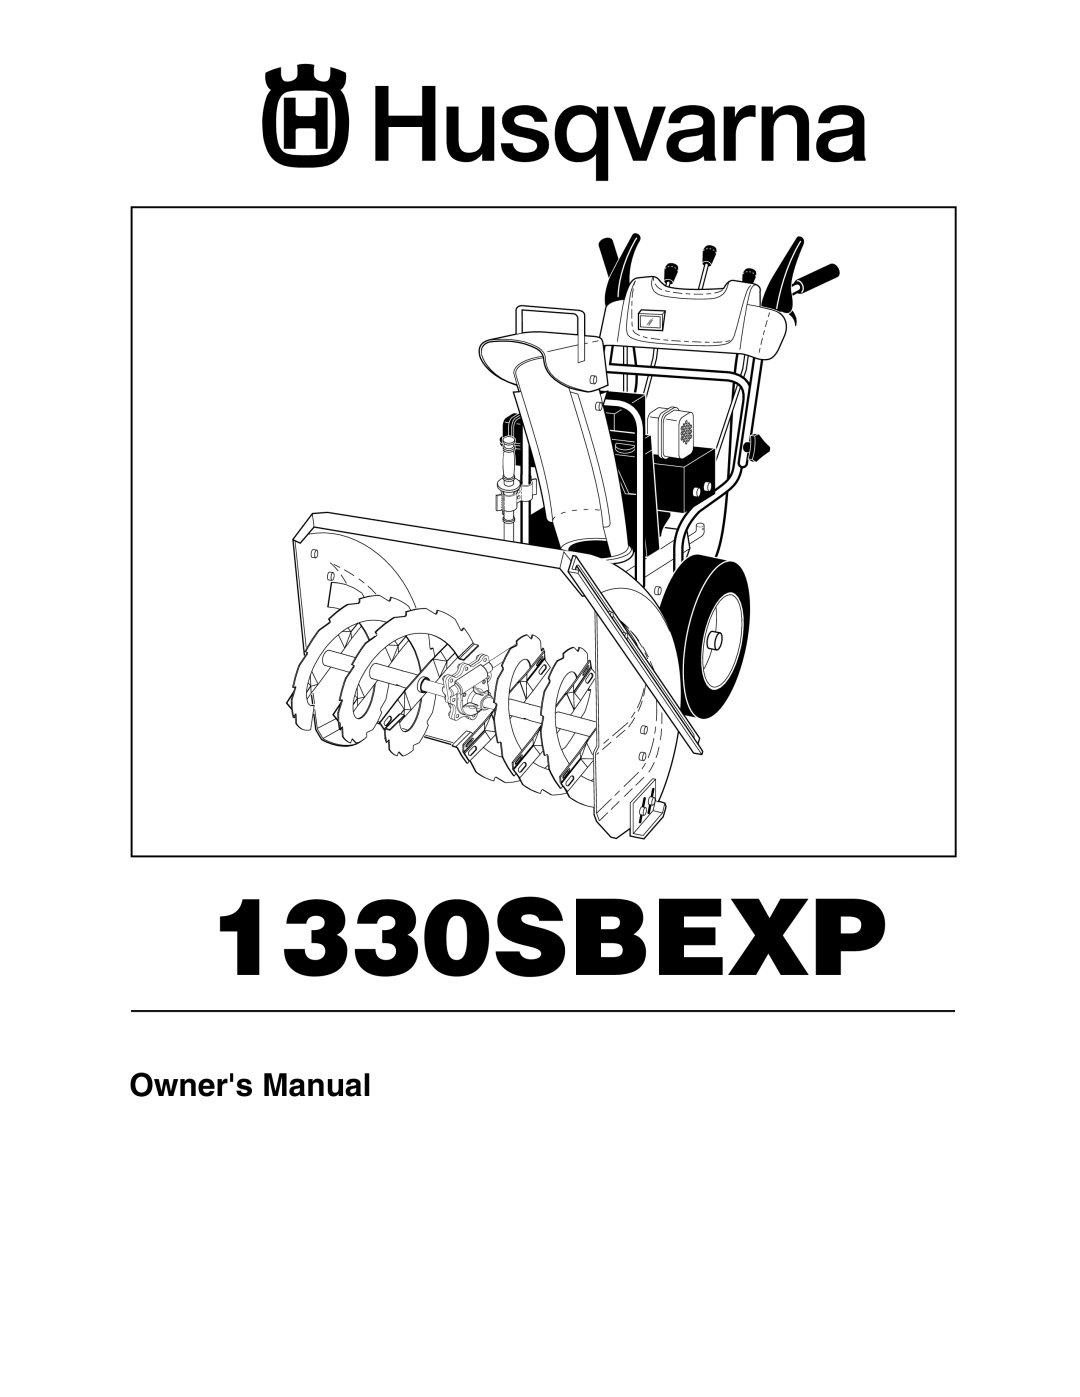 Husqvarna 1330SBEXP owner manual 